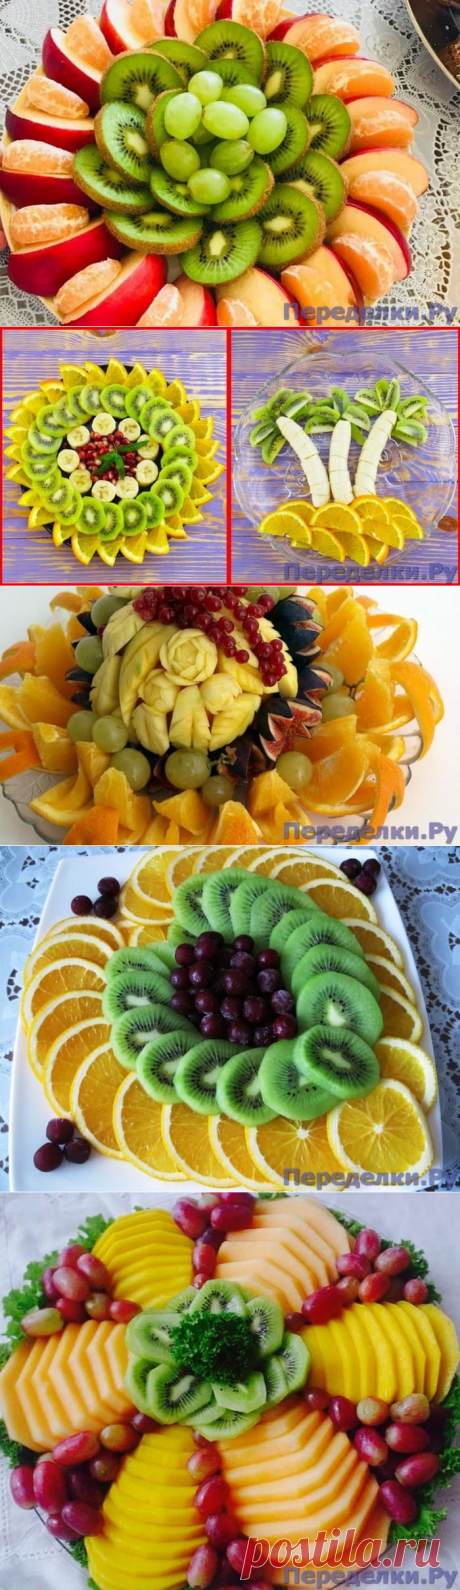 Красивые фруктовые и овощные нарезки на праздничный стол - Страница 3 из 4 - Переделки.РуПеределки.Ру | Page 3